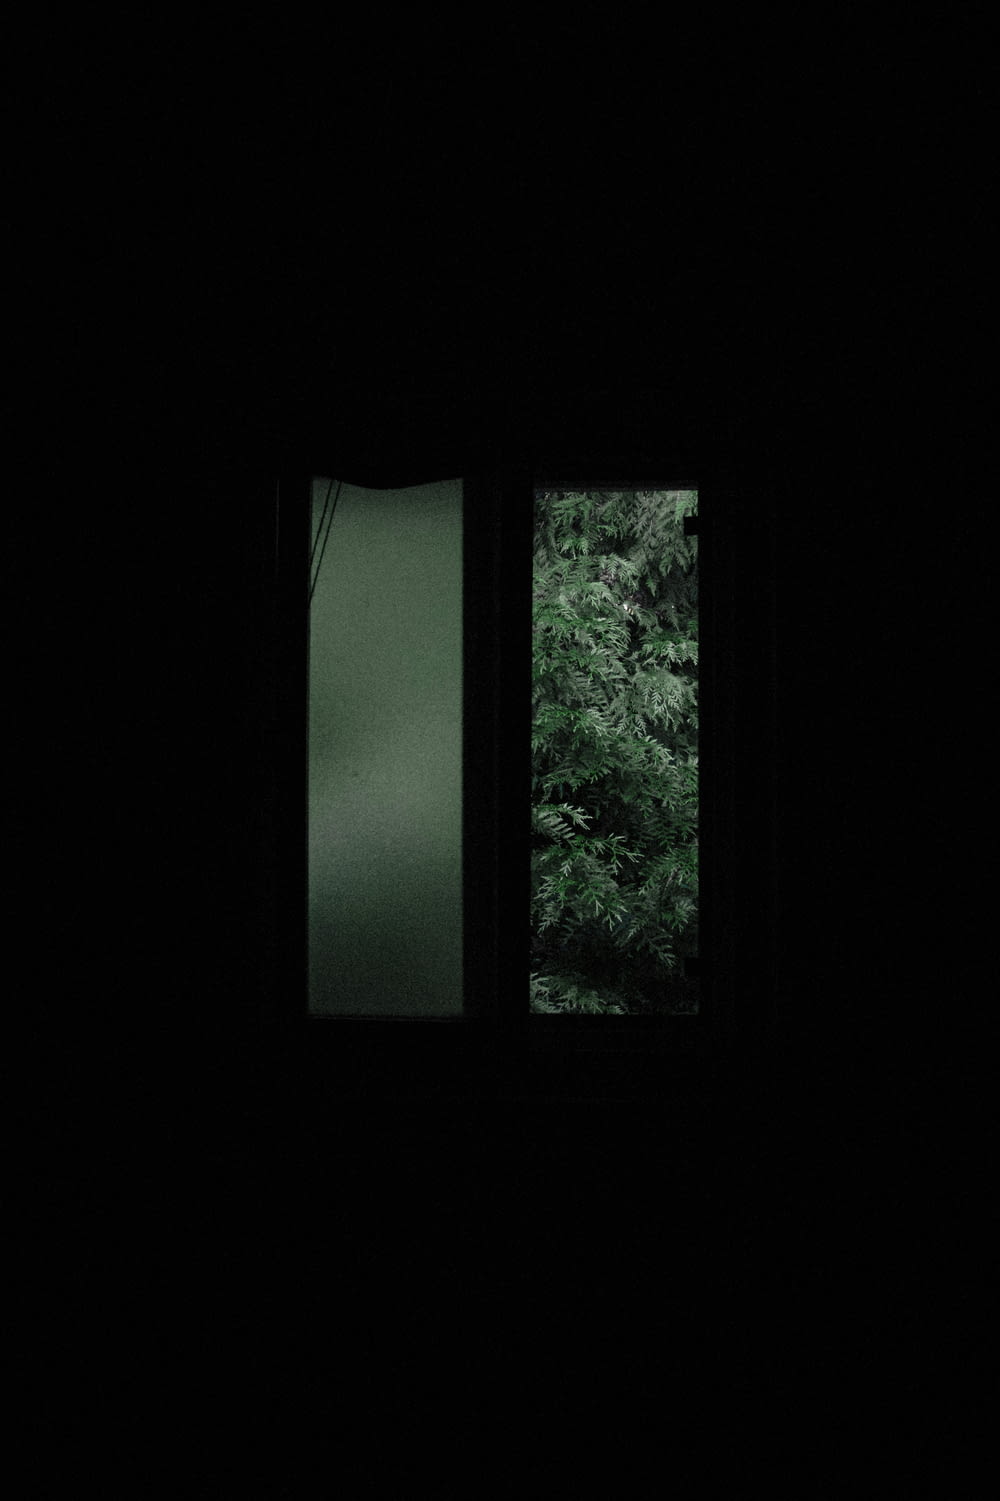 alberi verdi davanti alla finestra